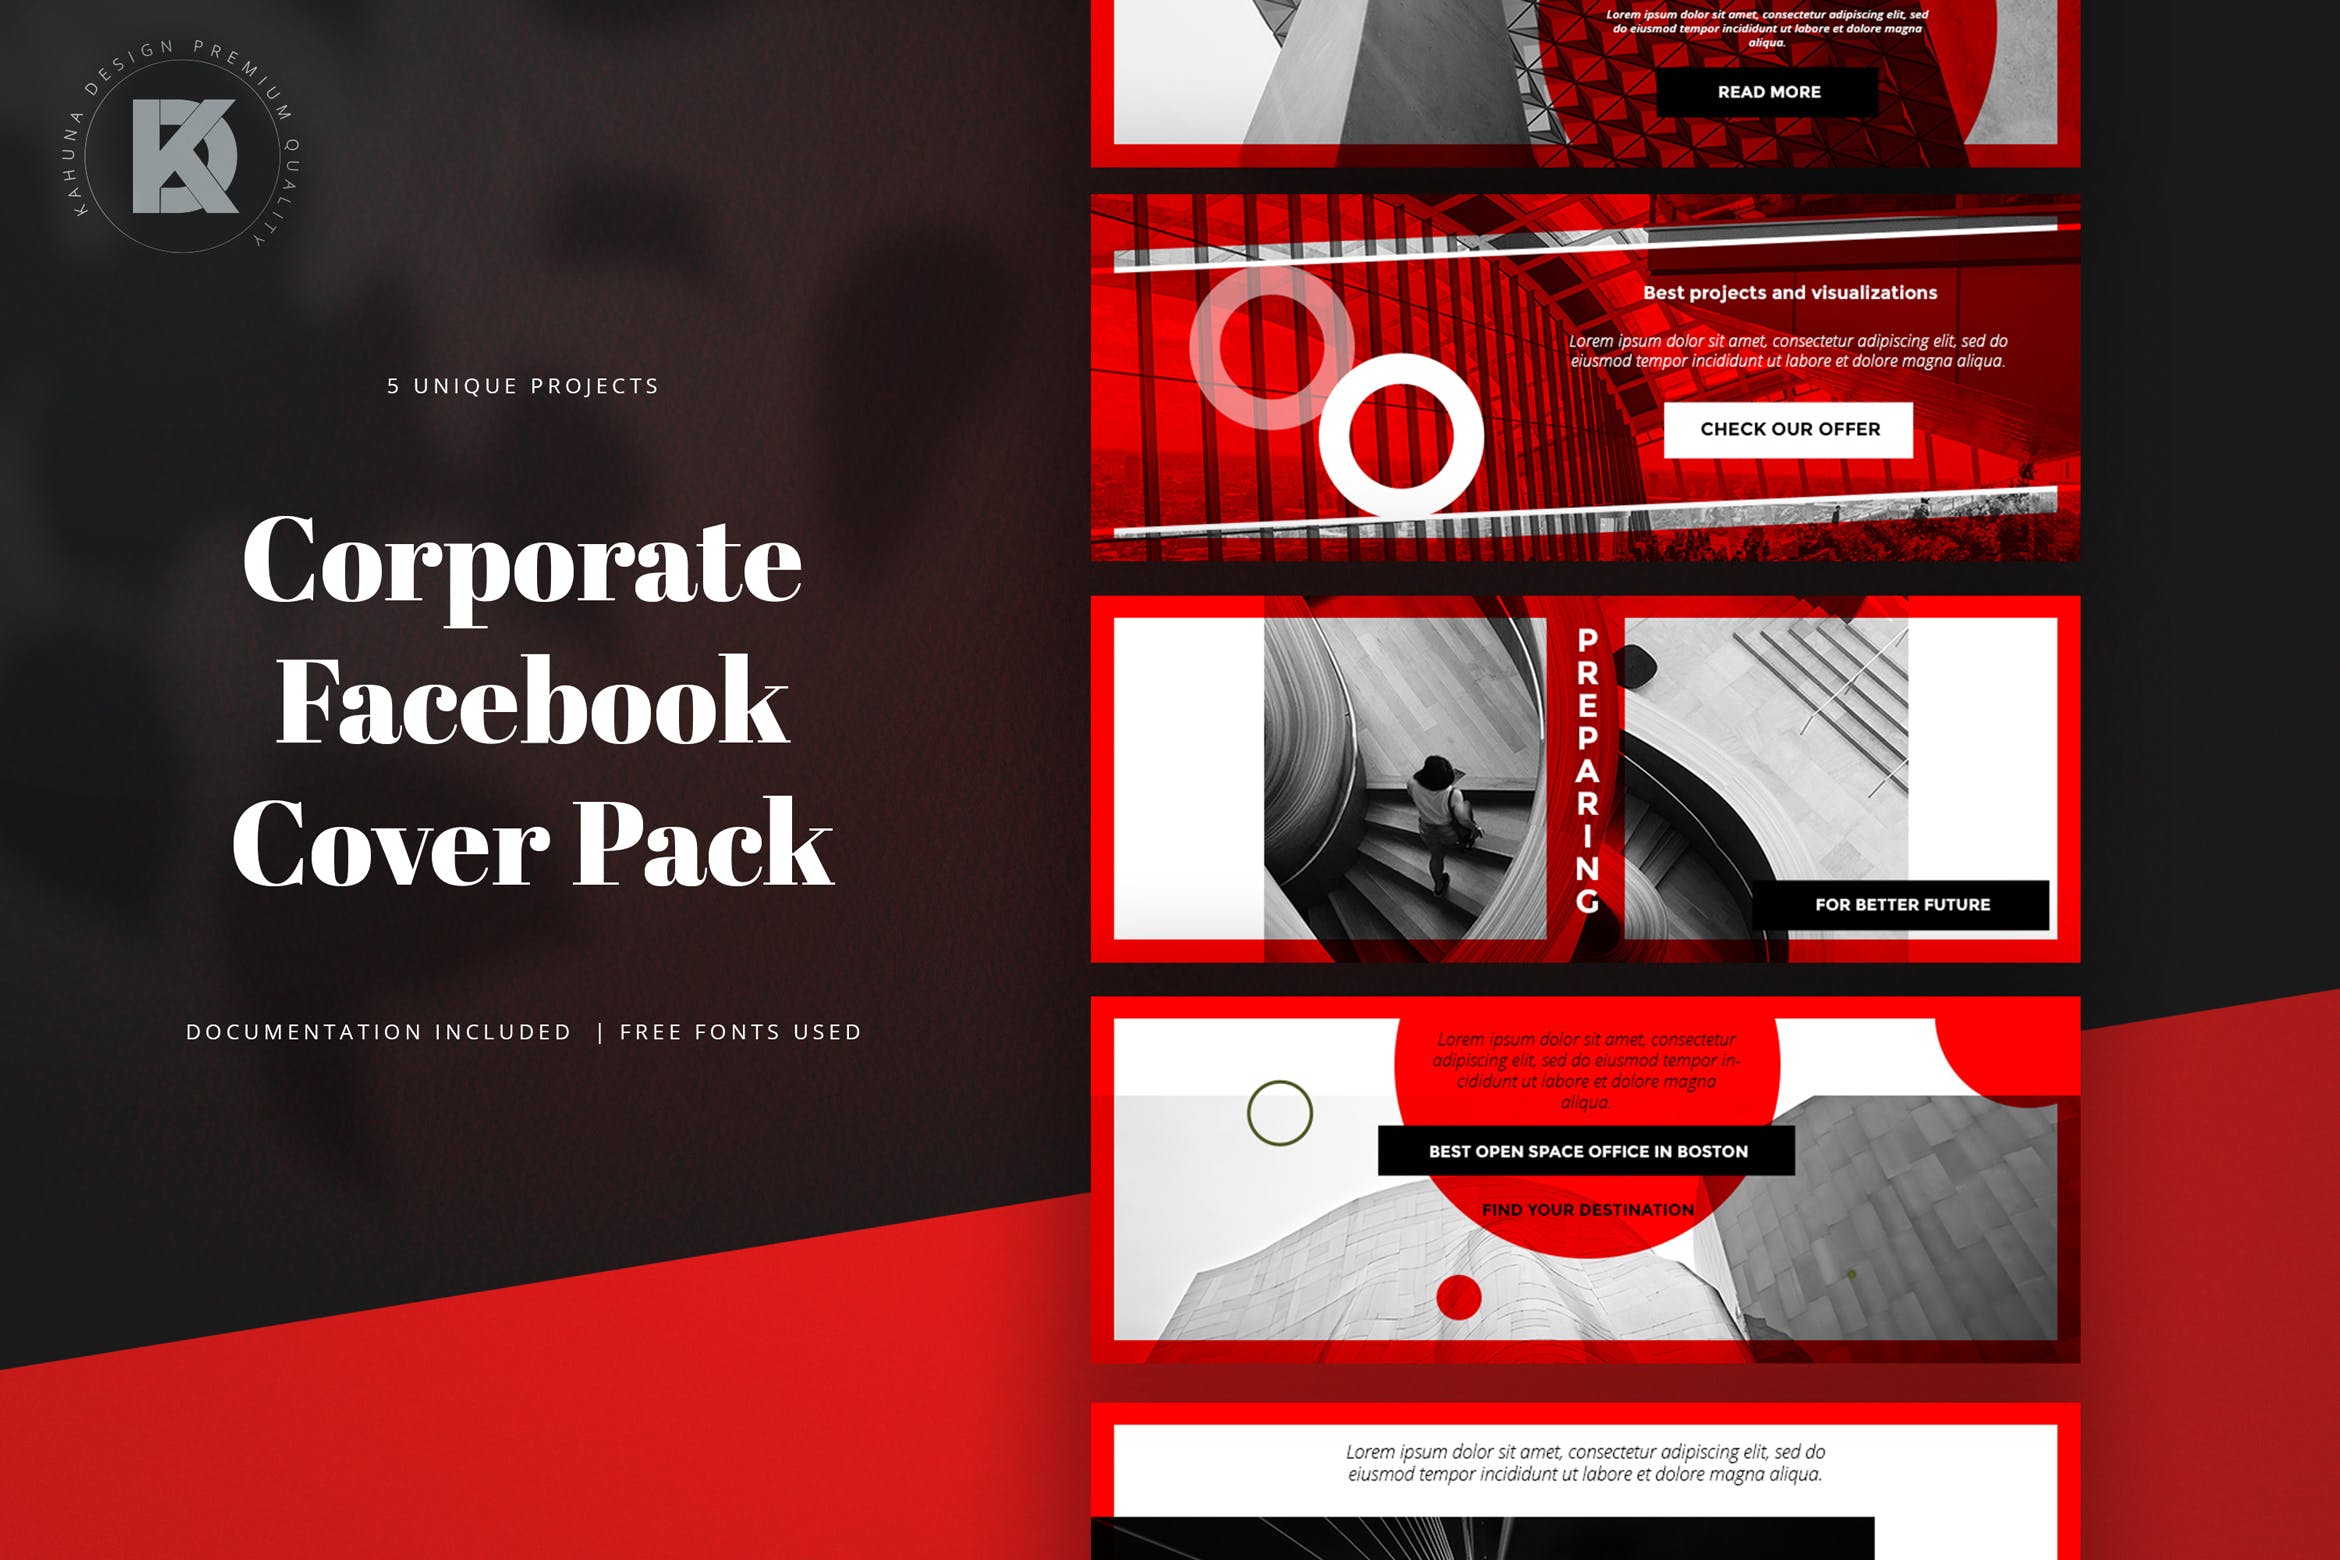 商务公司社交平台Facebook封面设计模板蚂蚁素材精选 Corporate Facebook Cover Pack插图